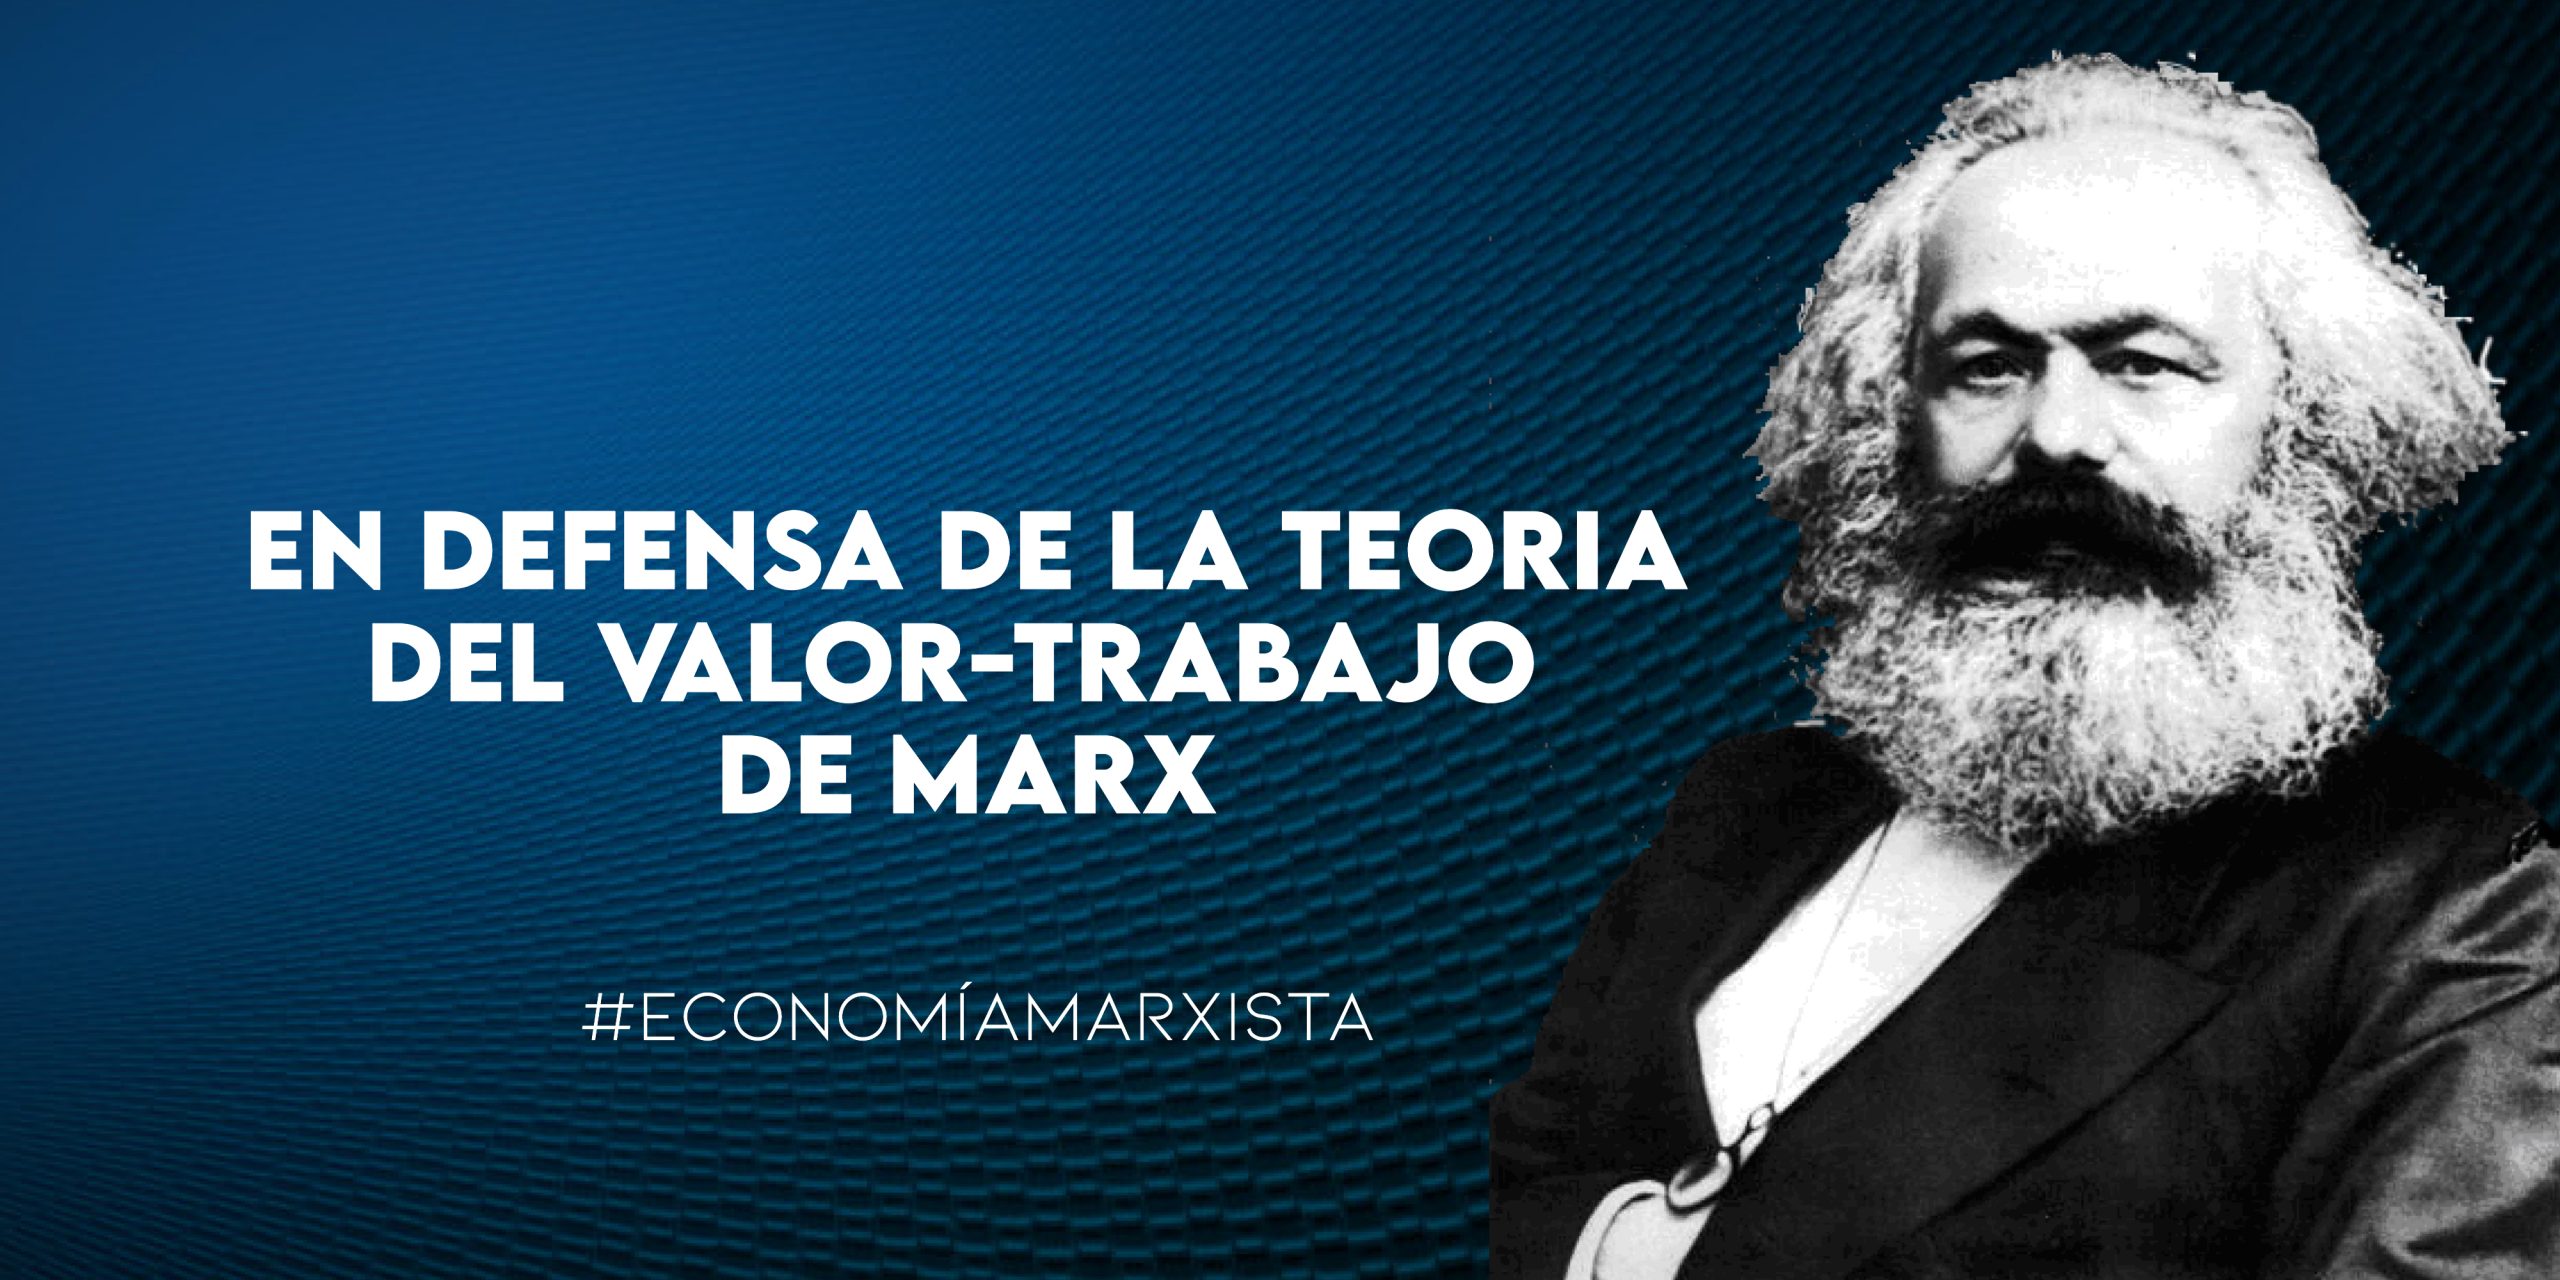 En defensa de la teoría del valor-trabajo de Marx